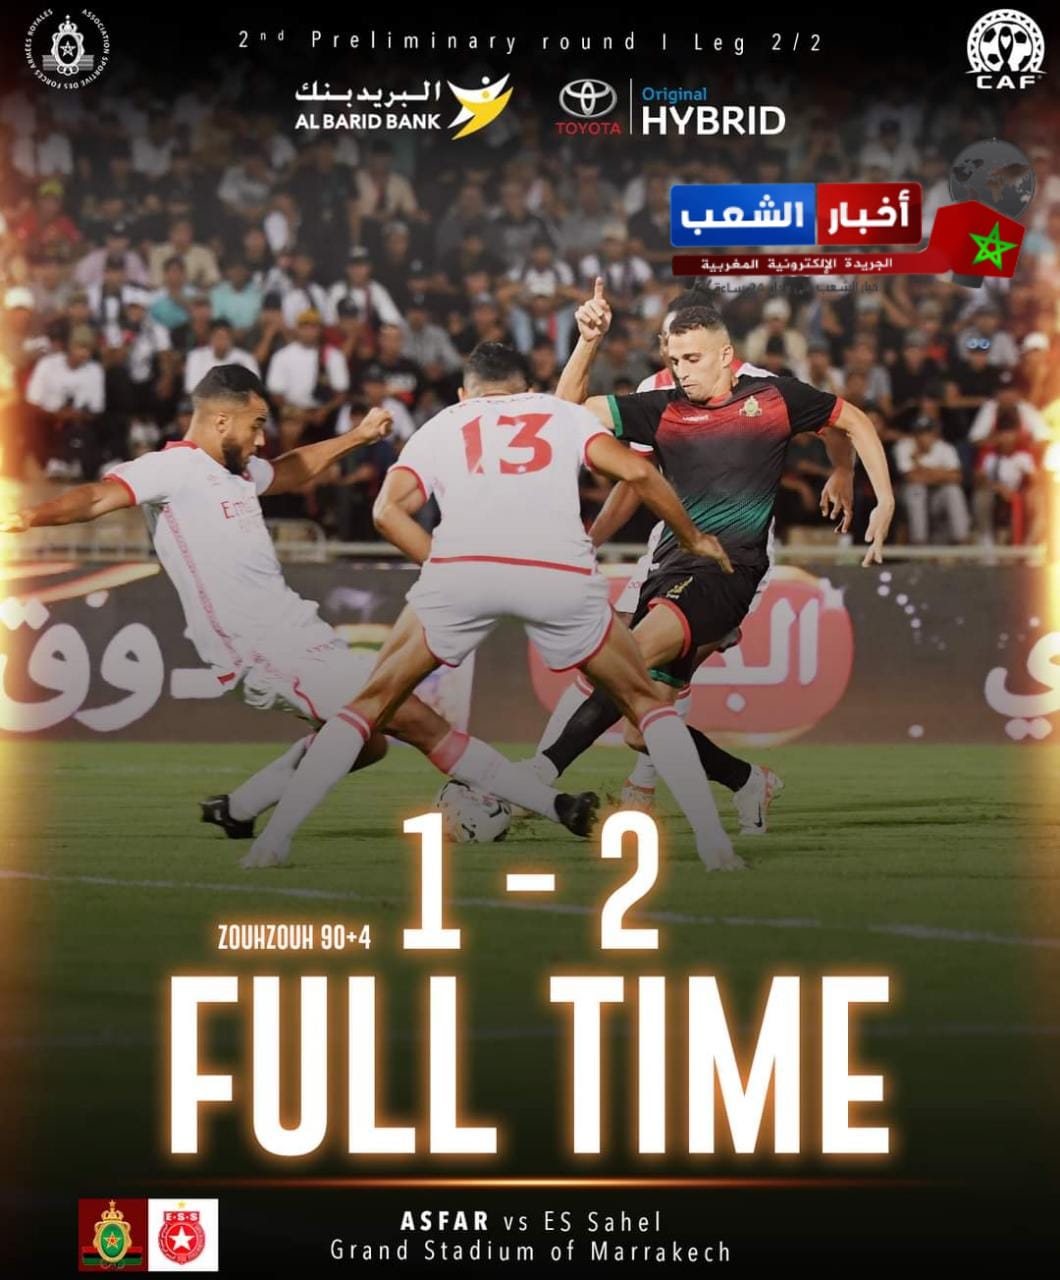 إقصاء فريق الجيش الملكي بعد خسرته1-2 أمام النجم الساحلي التونسي ويتأهل لدور مجموعات بدوري الأبطال إفريقيا  